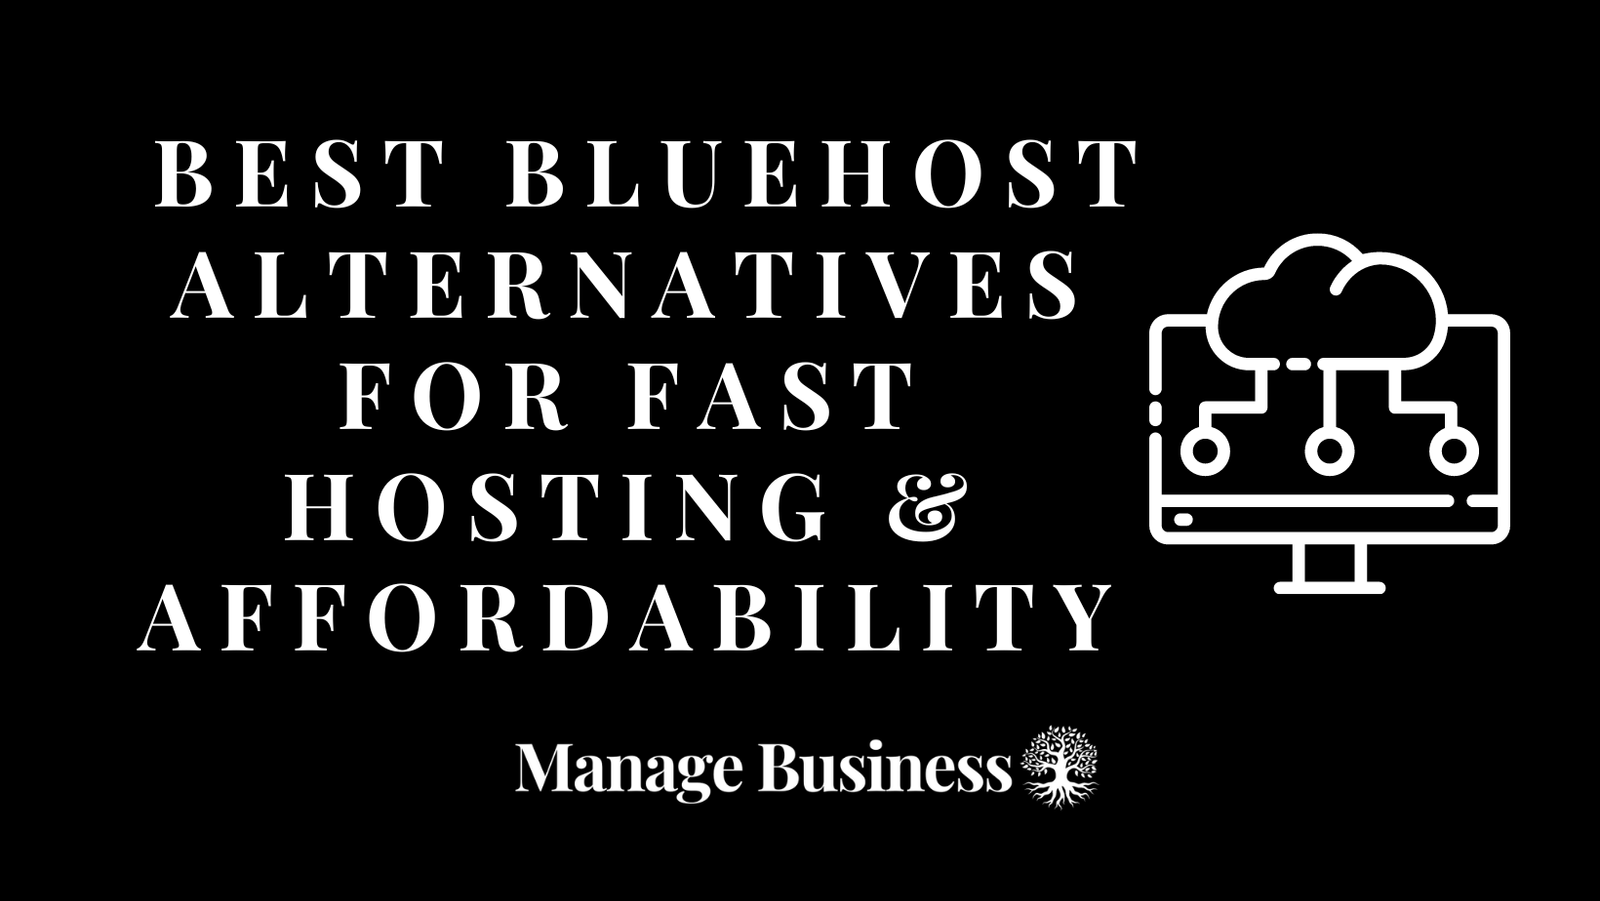 Best Bluehost Alternatives for Fast Hosting & Affordability